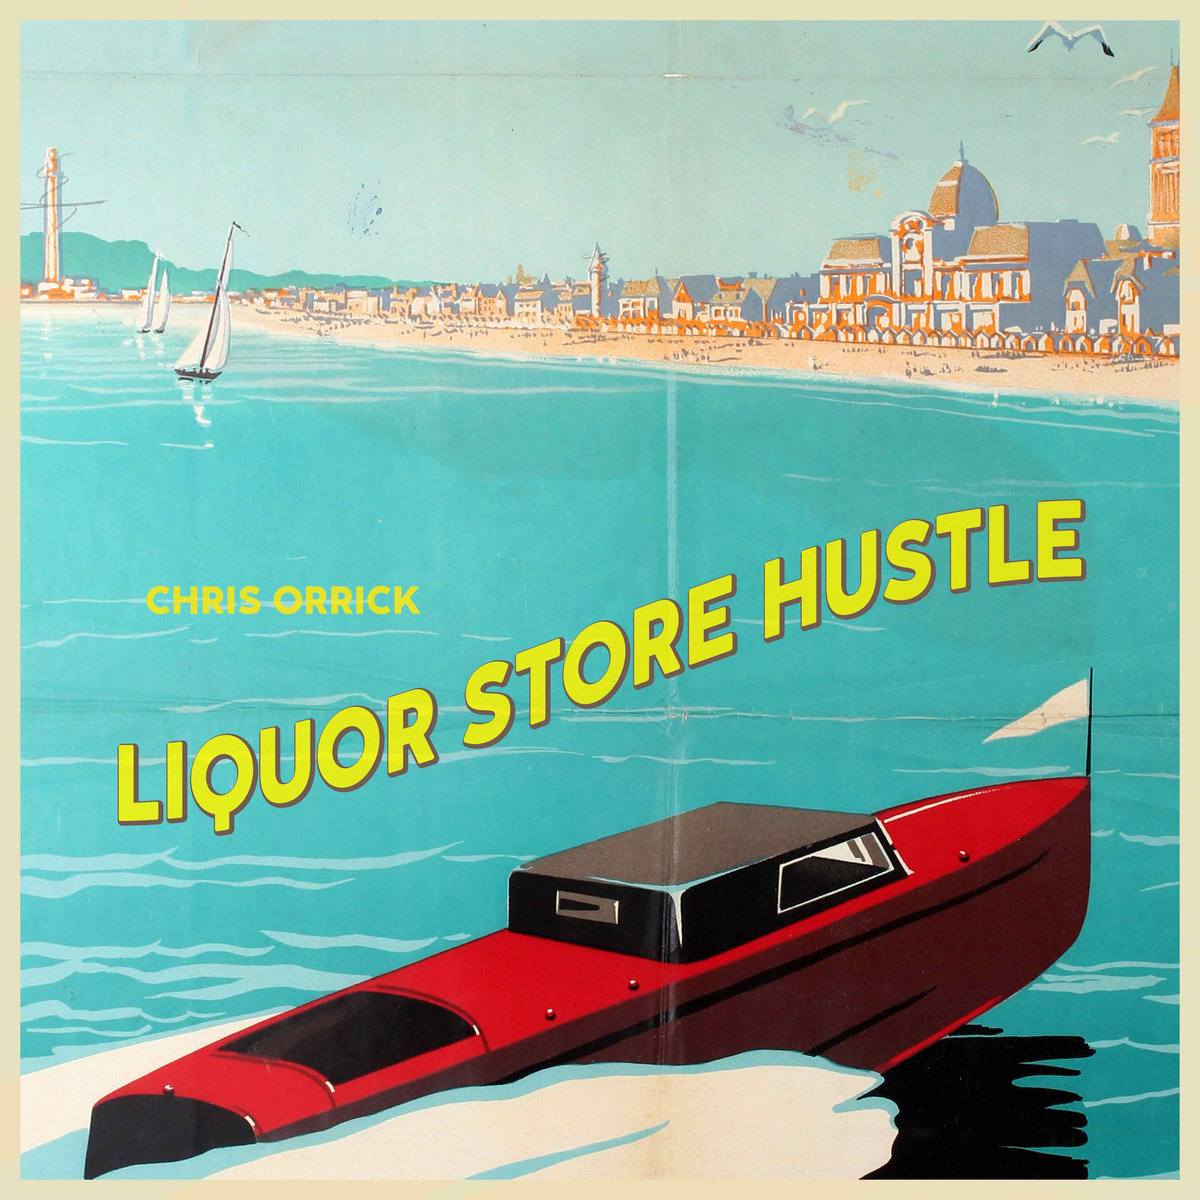 Chris_orrick_liquor_store_hustle